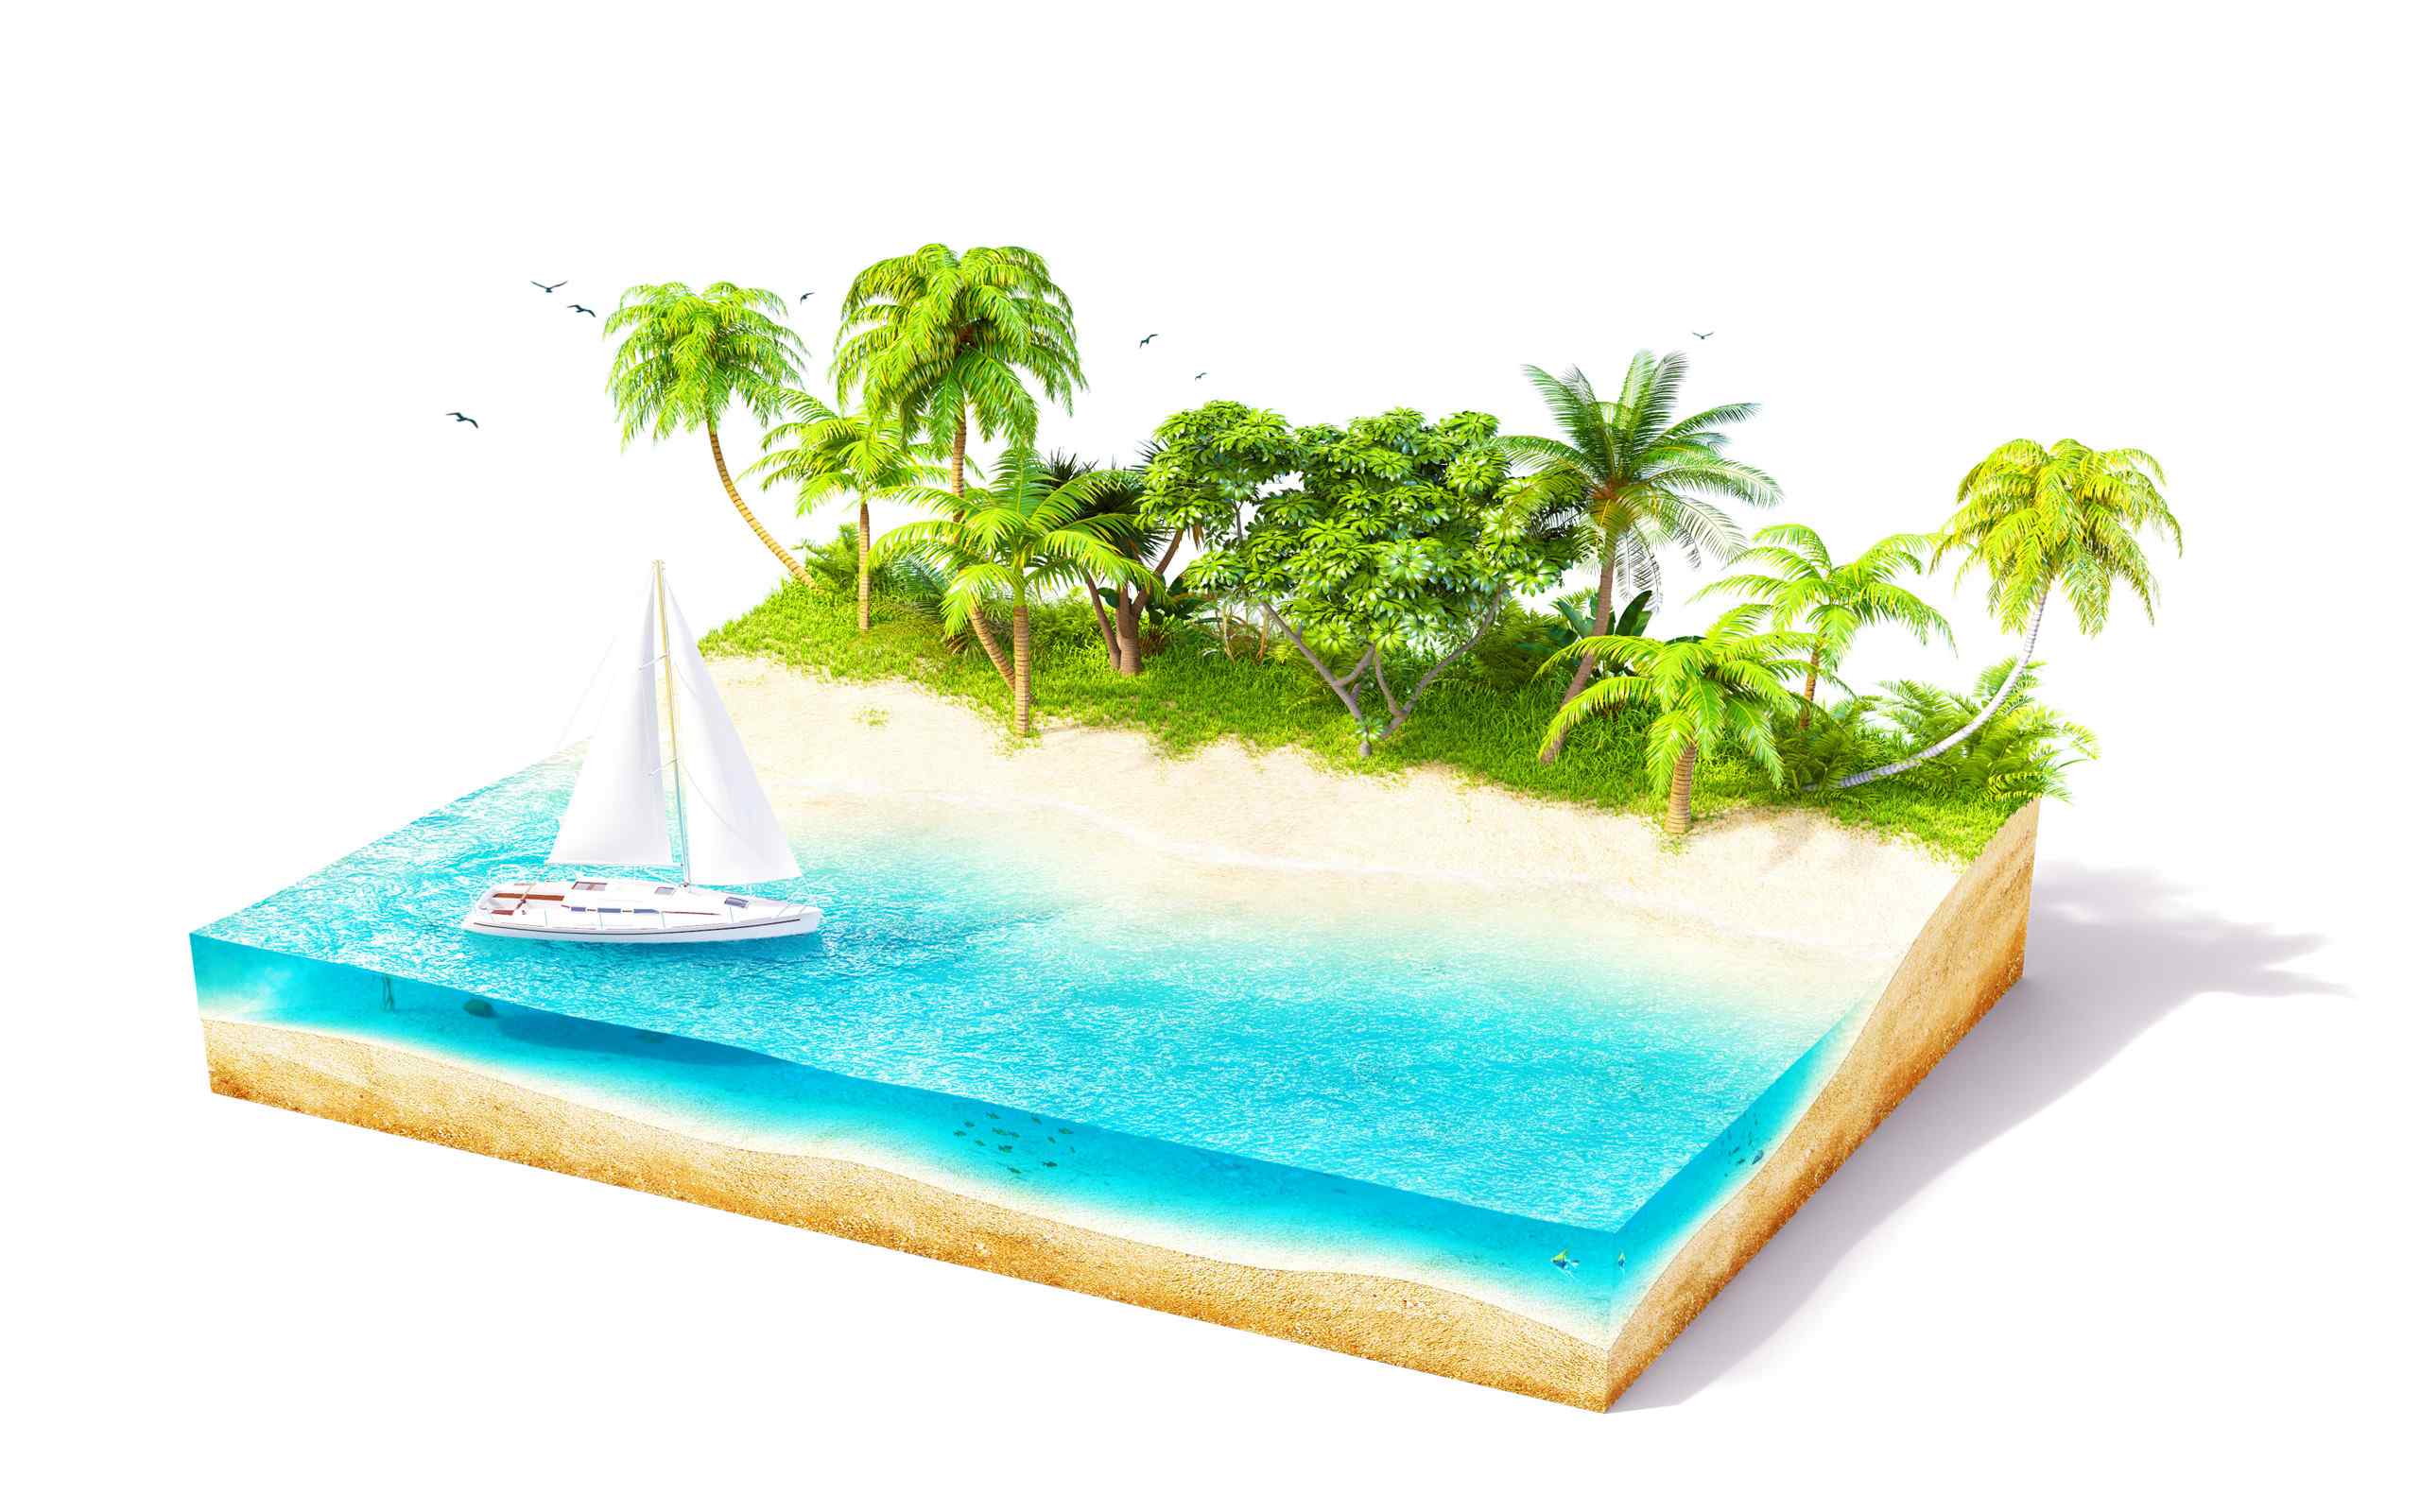 立体创意设计蓝色小岛海岛精选桌面壁纸图片大全